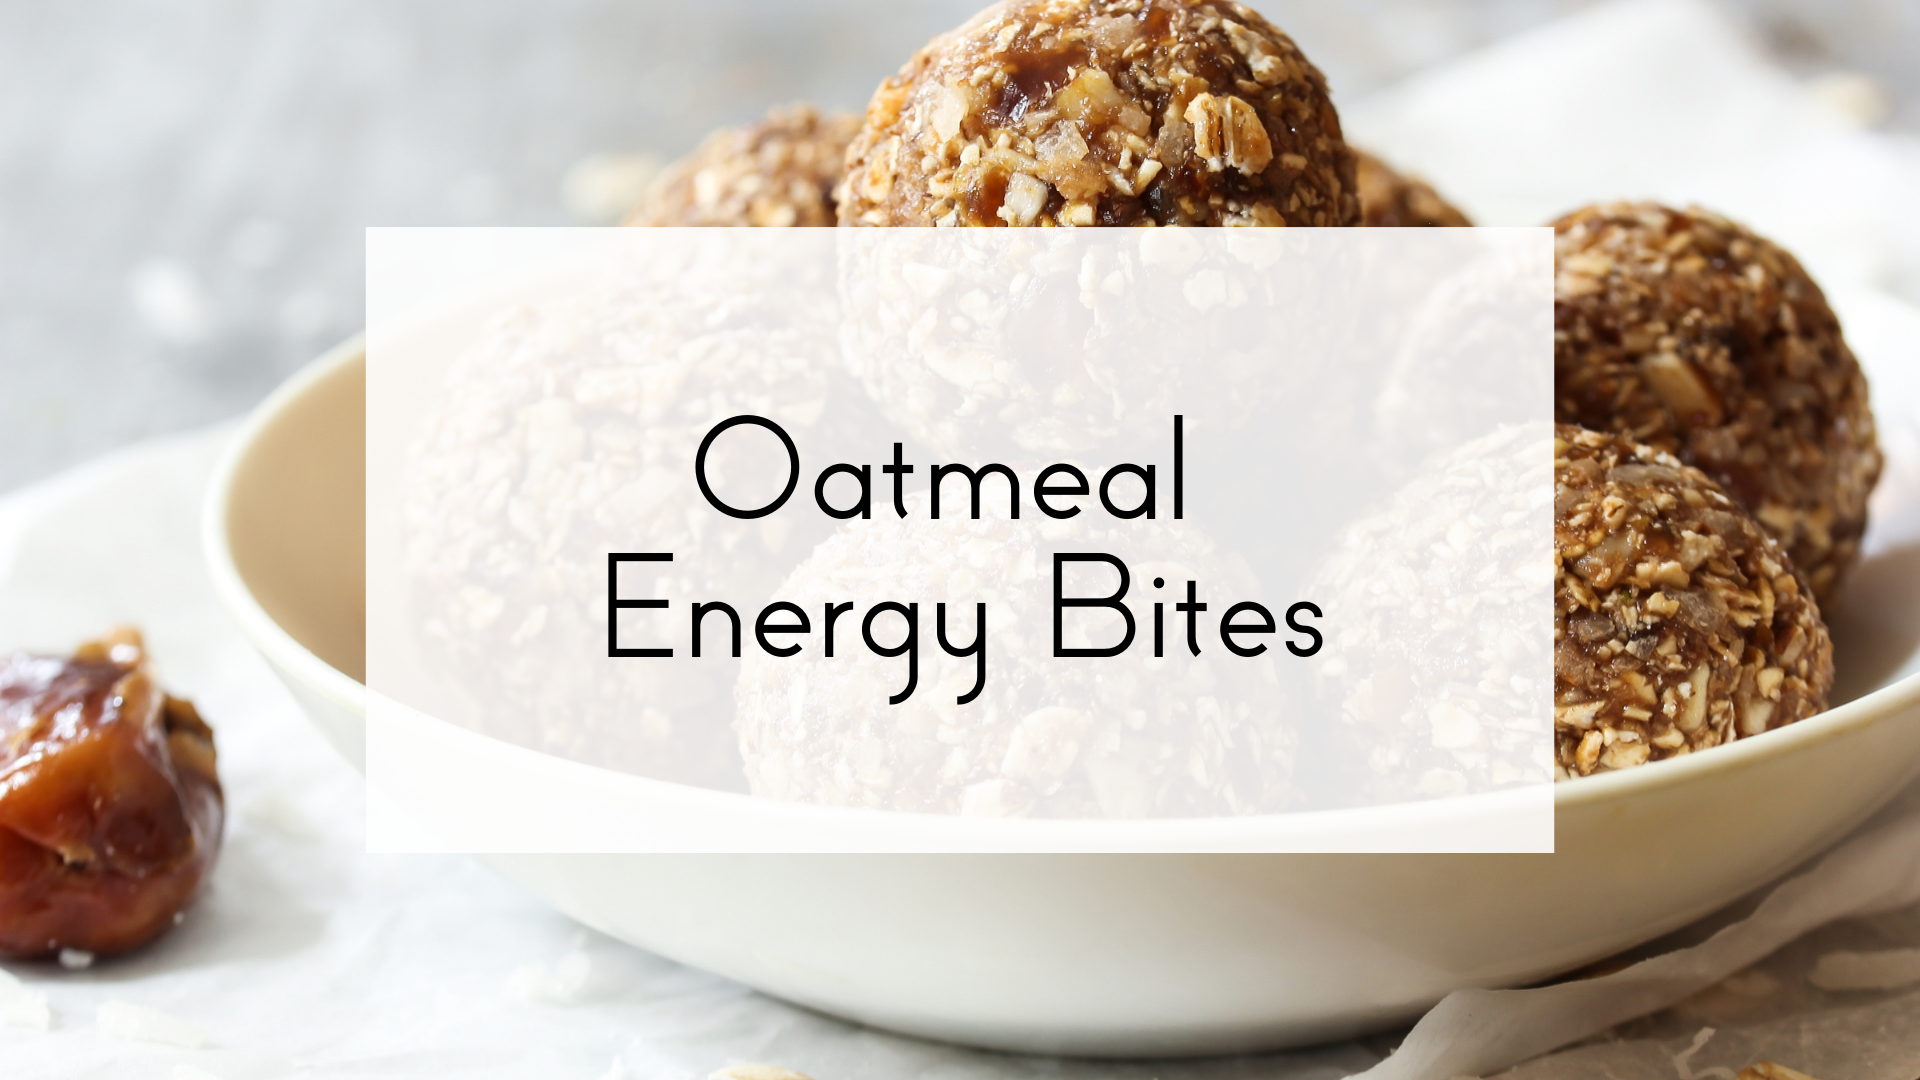 Oatmeal Energy Bites